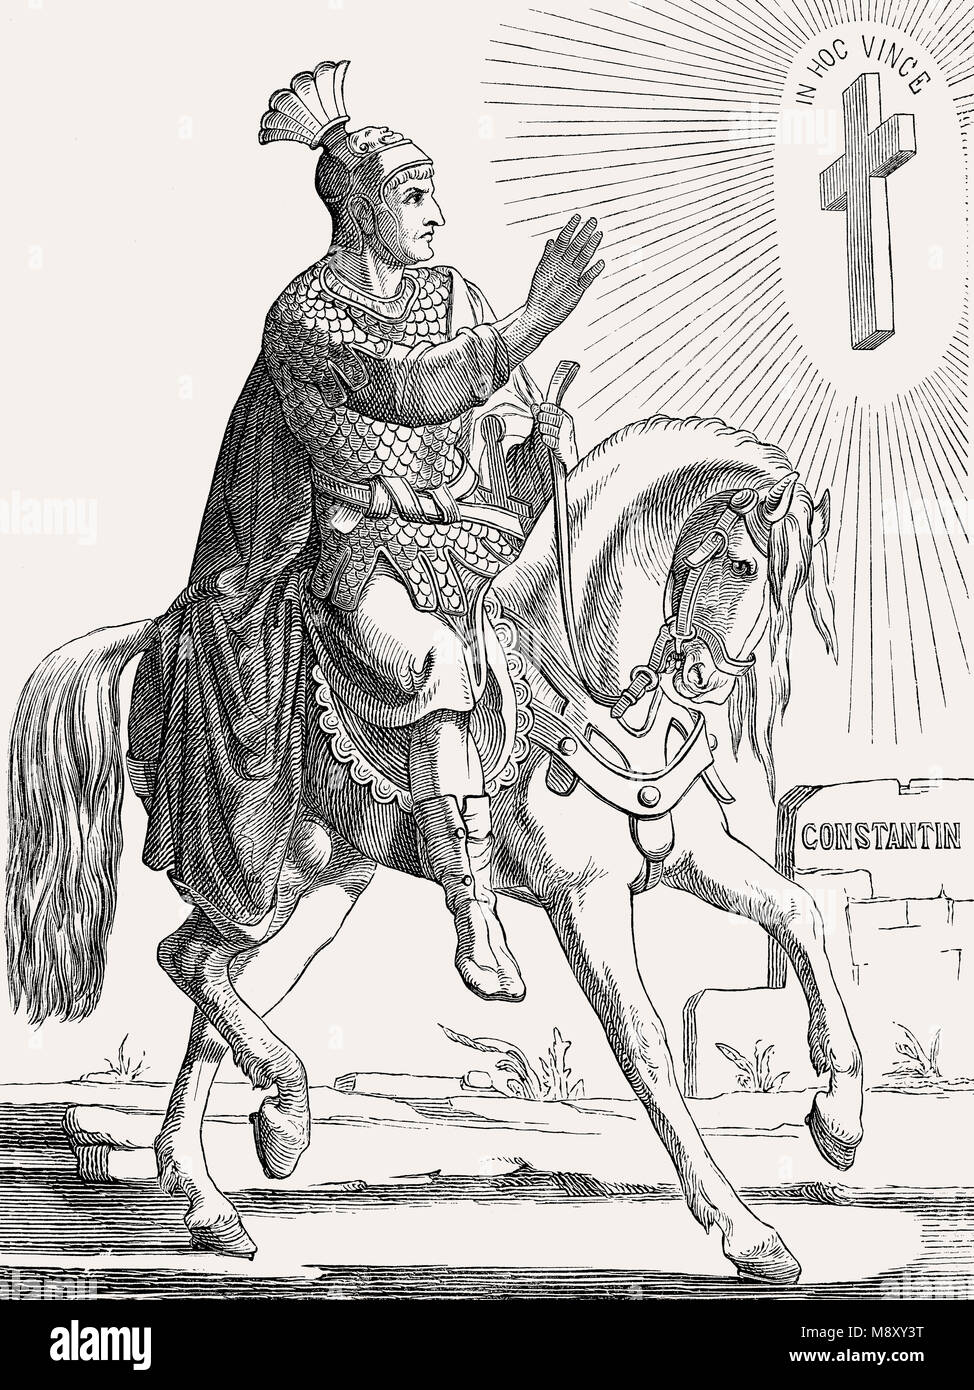 Constantin le Grand, ou Constantin I, empereur romain de 306 à 337 Banque D'Images